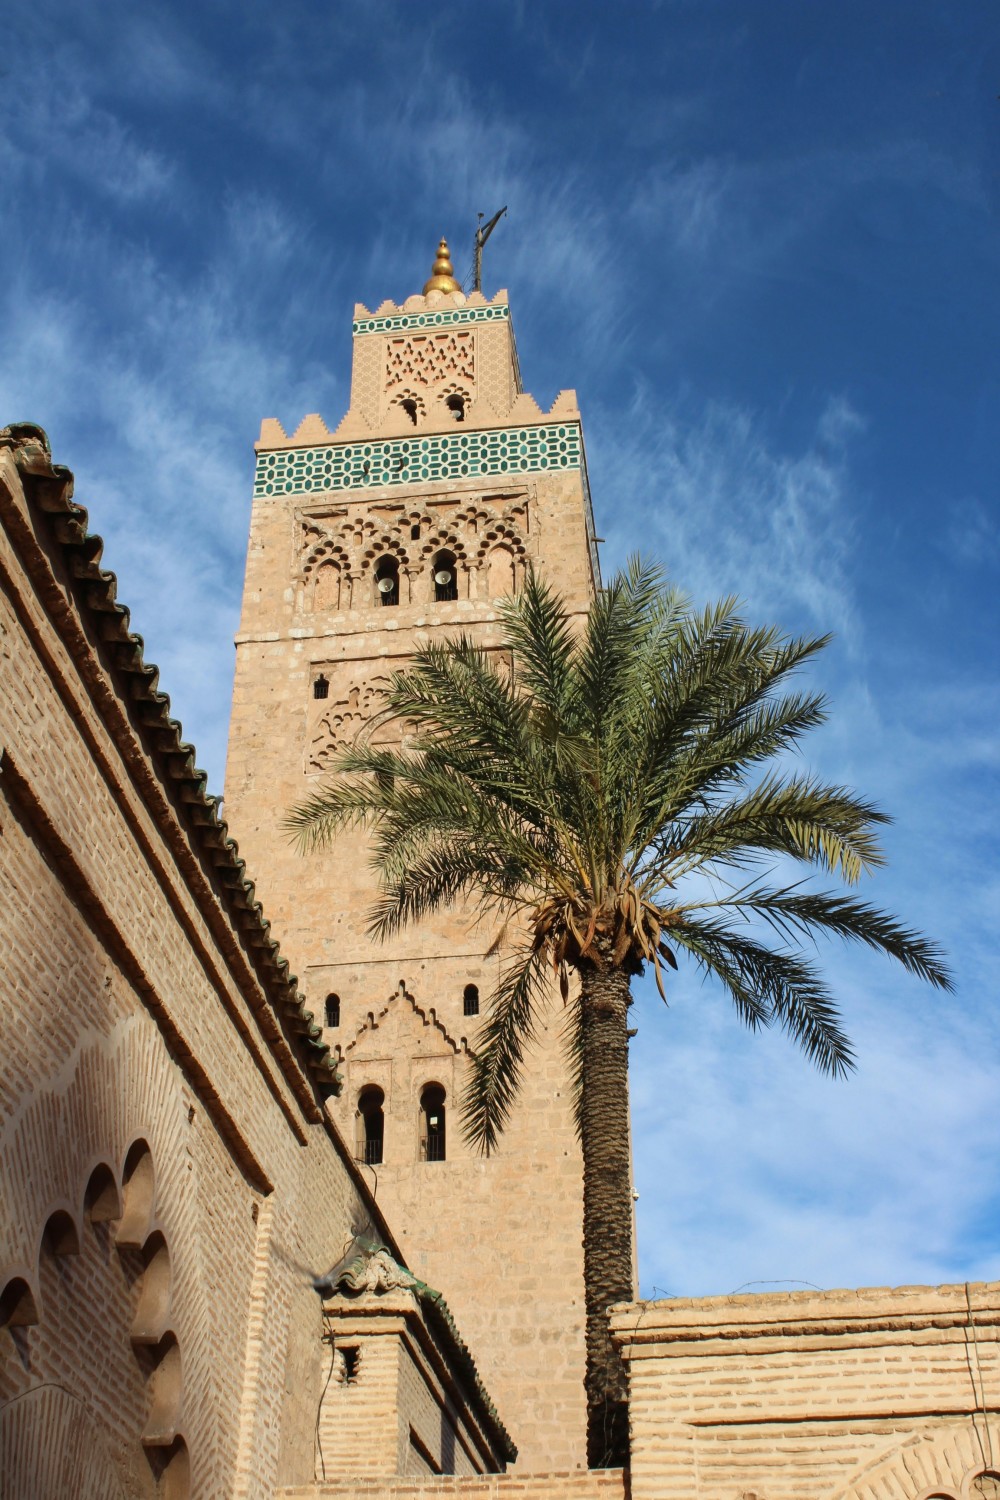 Monument in Marrakech, Morroco